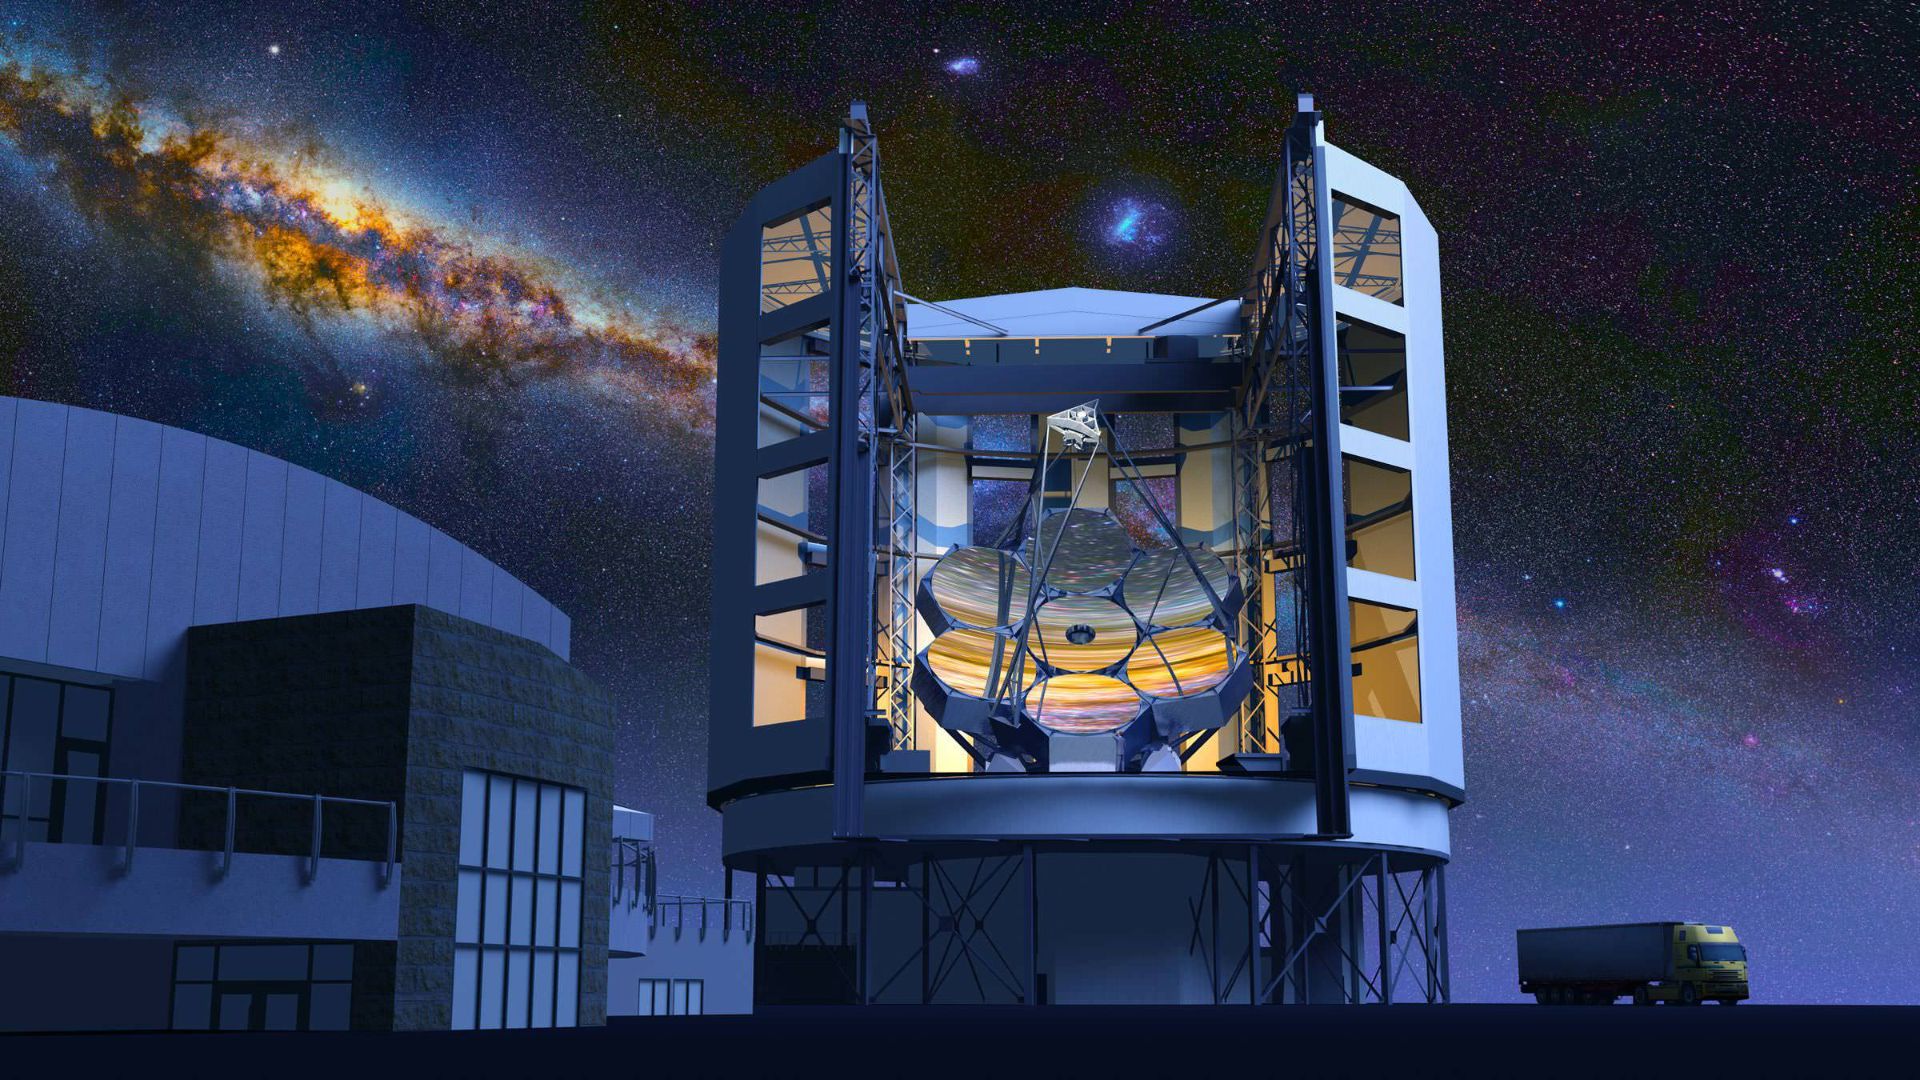 مرجع متخصصين ايران تصوير هنري از تلسكوپ بزرگ ماژلان و آينه ۷ بخشي آن